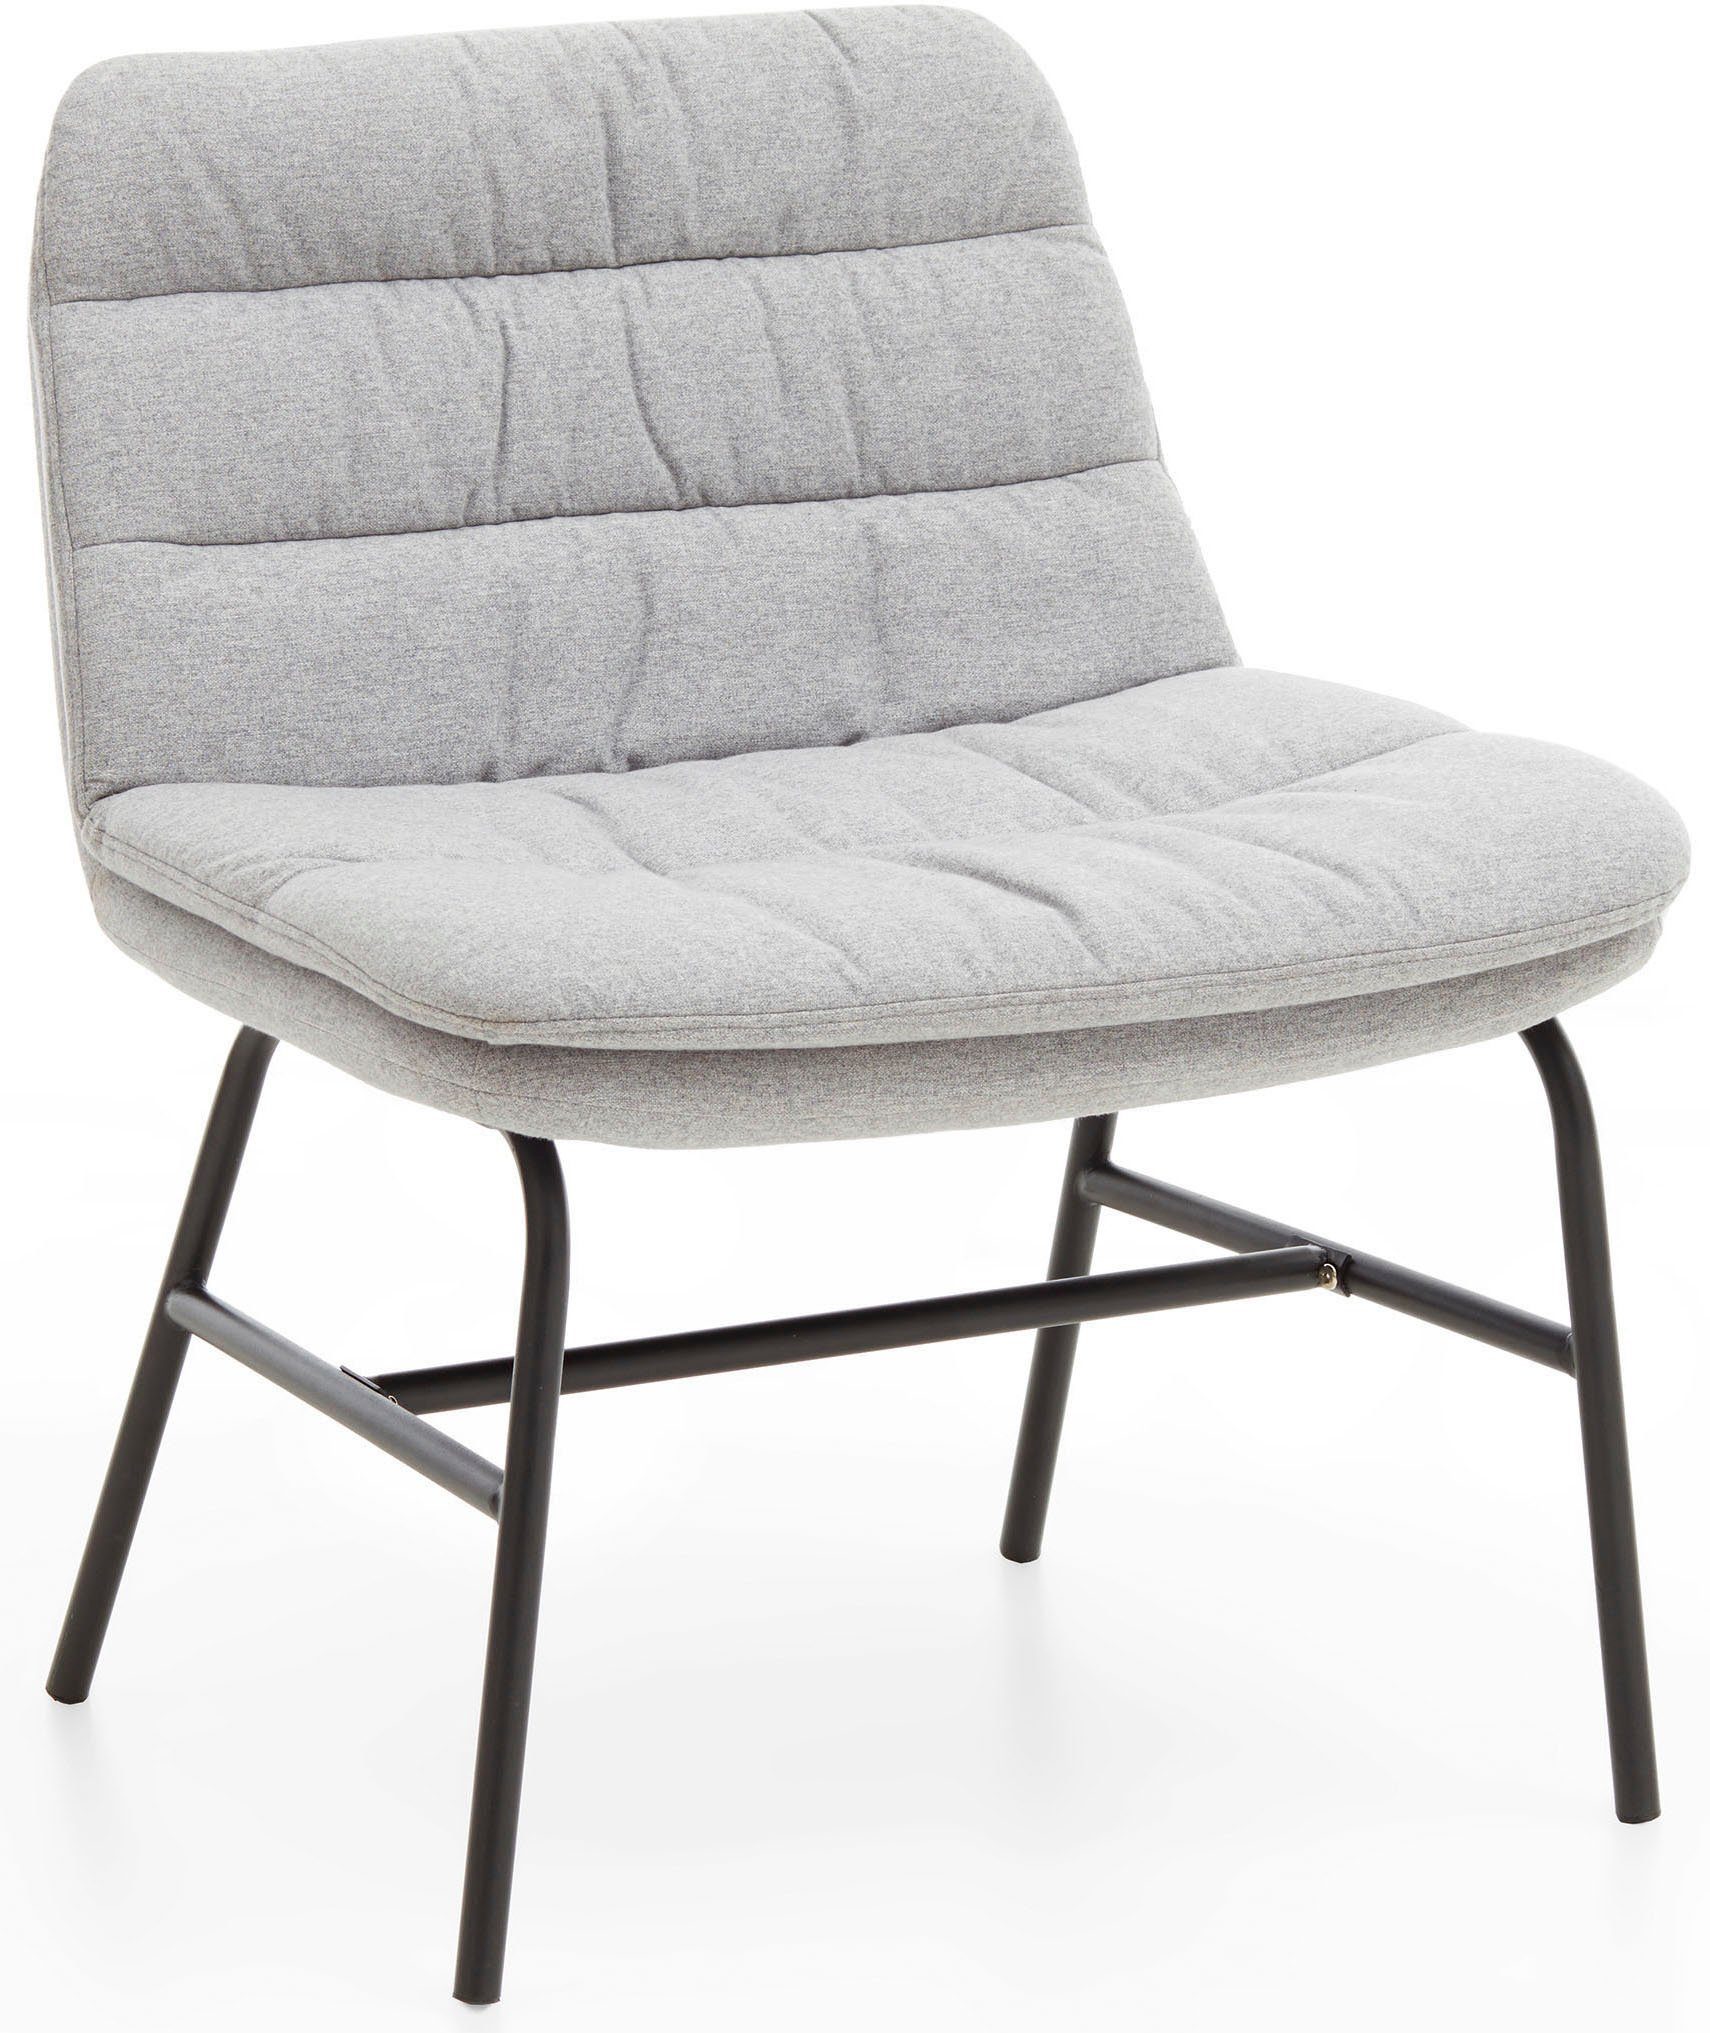 Home affaire Polsterstuhl Peter (Set, 2 St), moderner Stuhl mit breiter und tiefer Sitzfläche | Polsterstühle